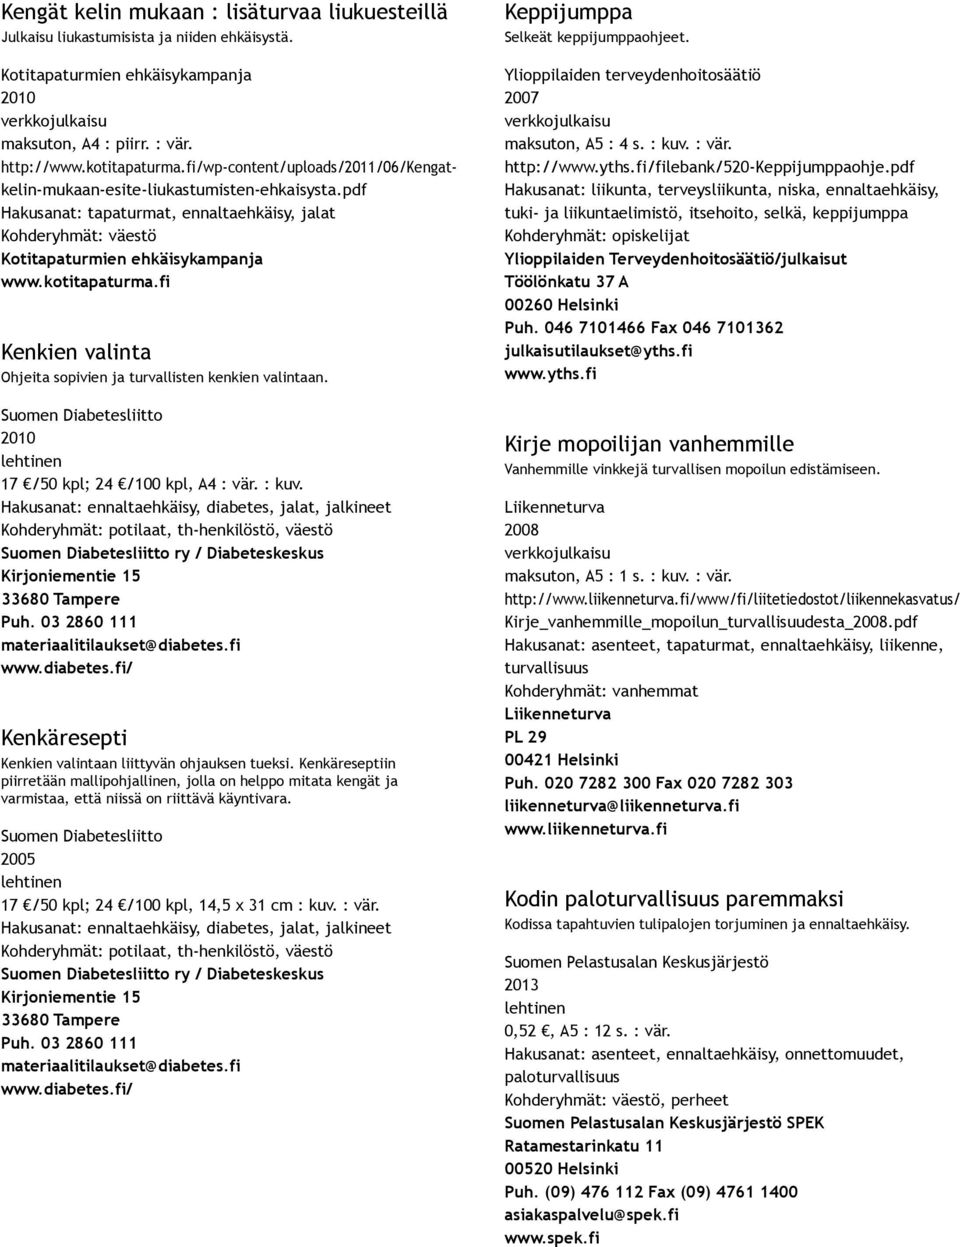 fi Kenkien valinta Ohjeita sopivien ja turvallisten kenkien valintaan. Suomen Diabetesliitto 17 /50 kpl; 24 /100 kpl, A4 : vär. : kuv.